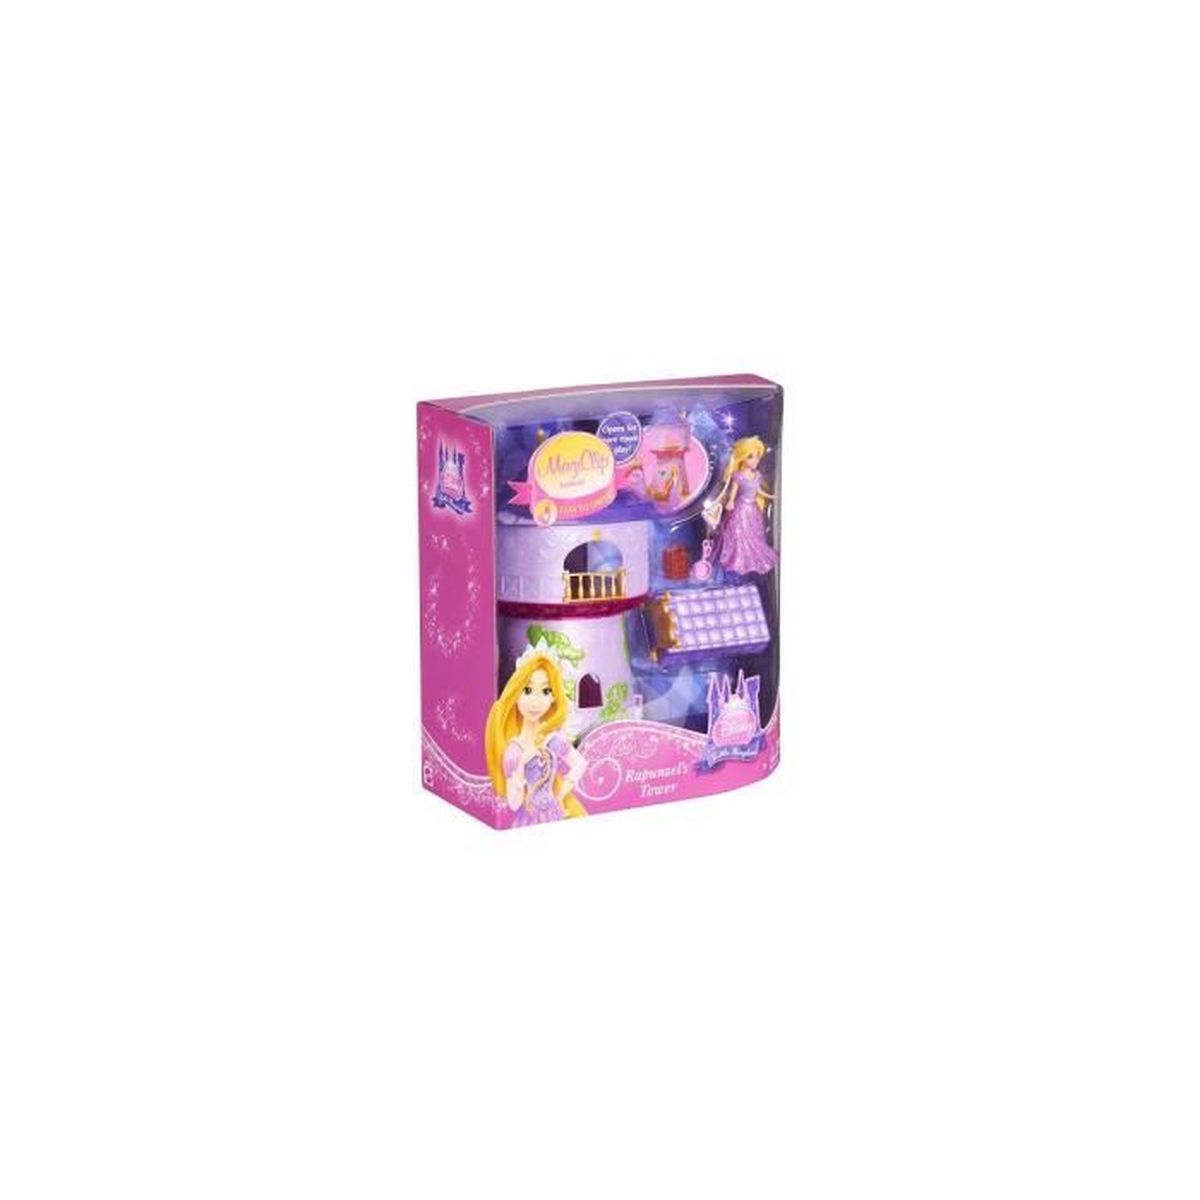 Mattel Disney Princess Mini poup e Raiponce Magi